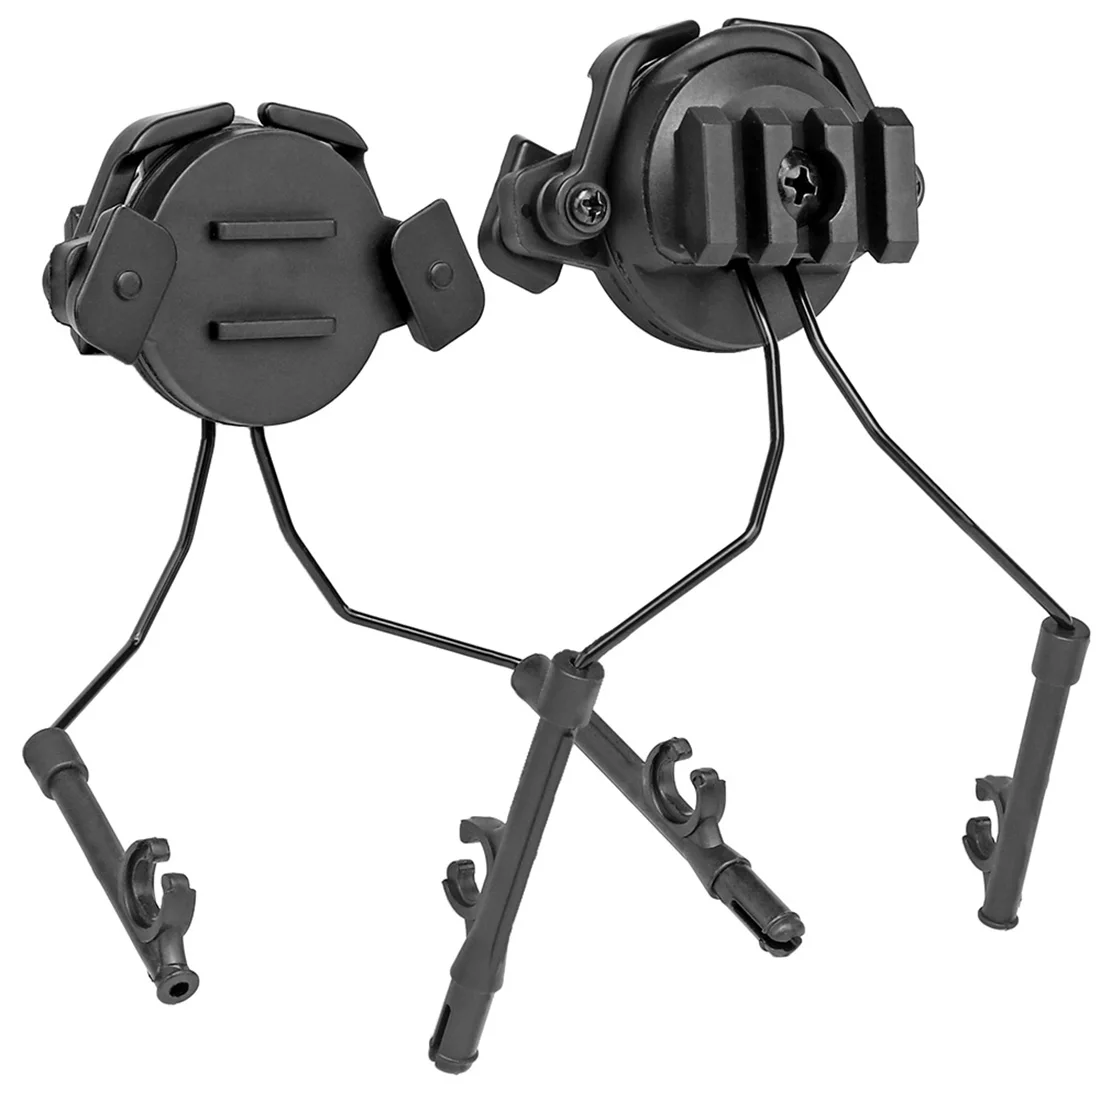 

WOSPORT Headphone Bracket Horn Earphone Holder for 19-21mm Helmet Guide Rail - Black